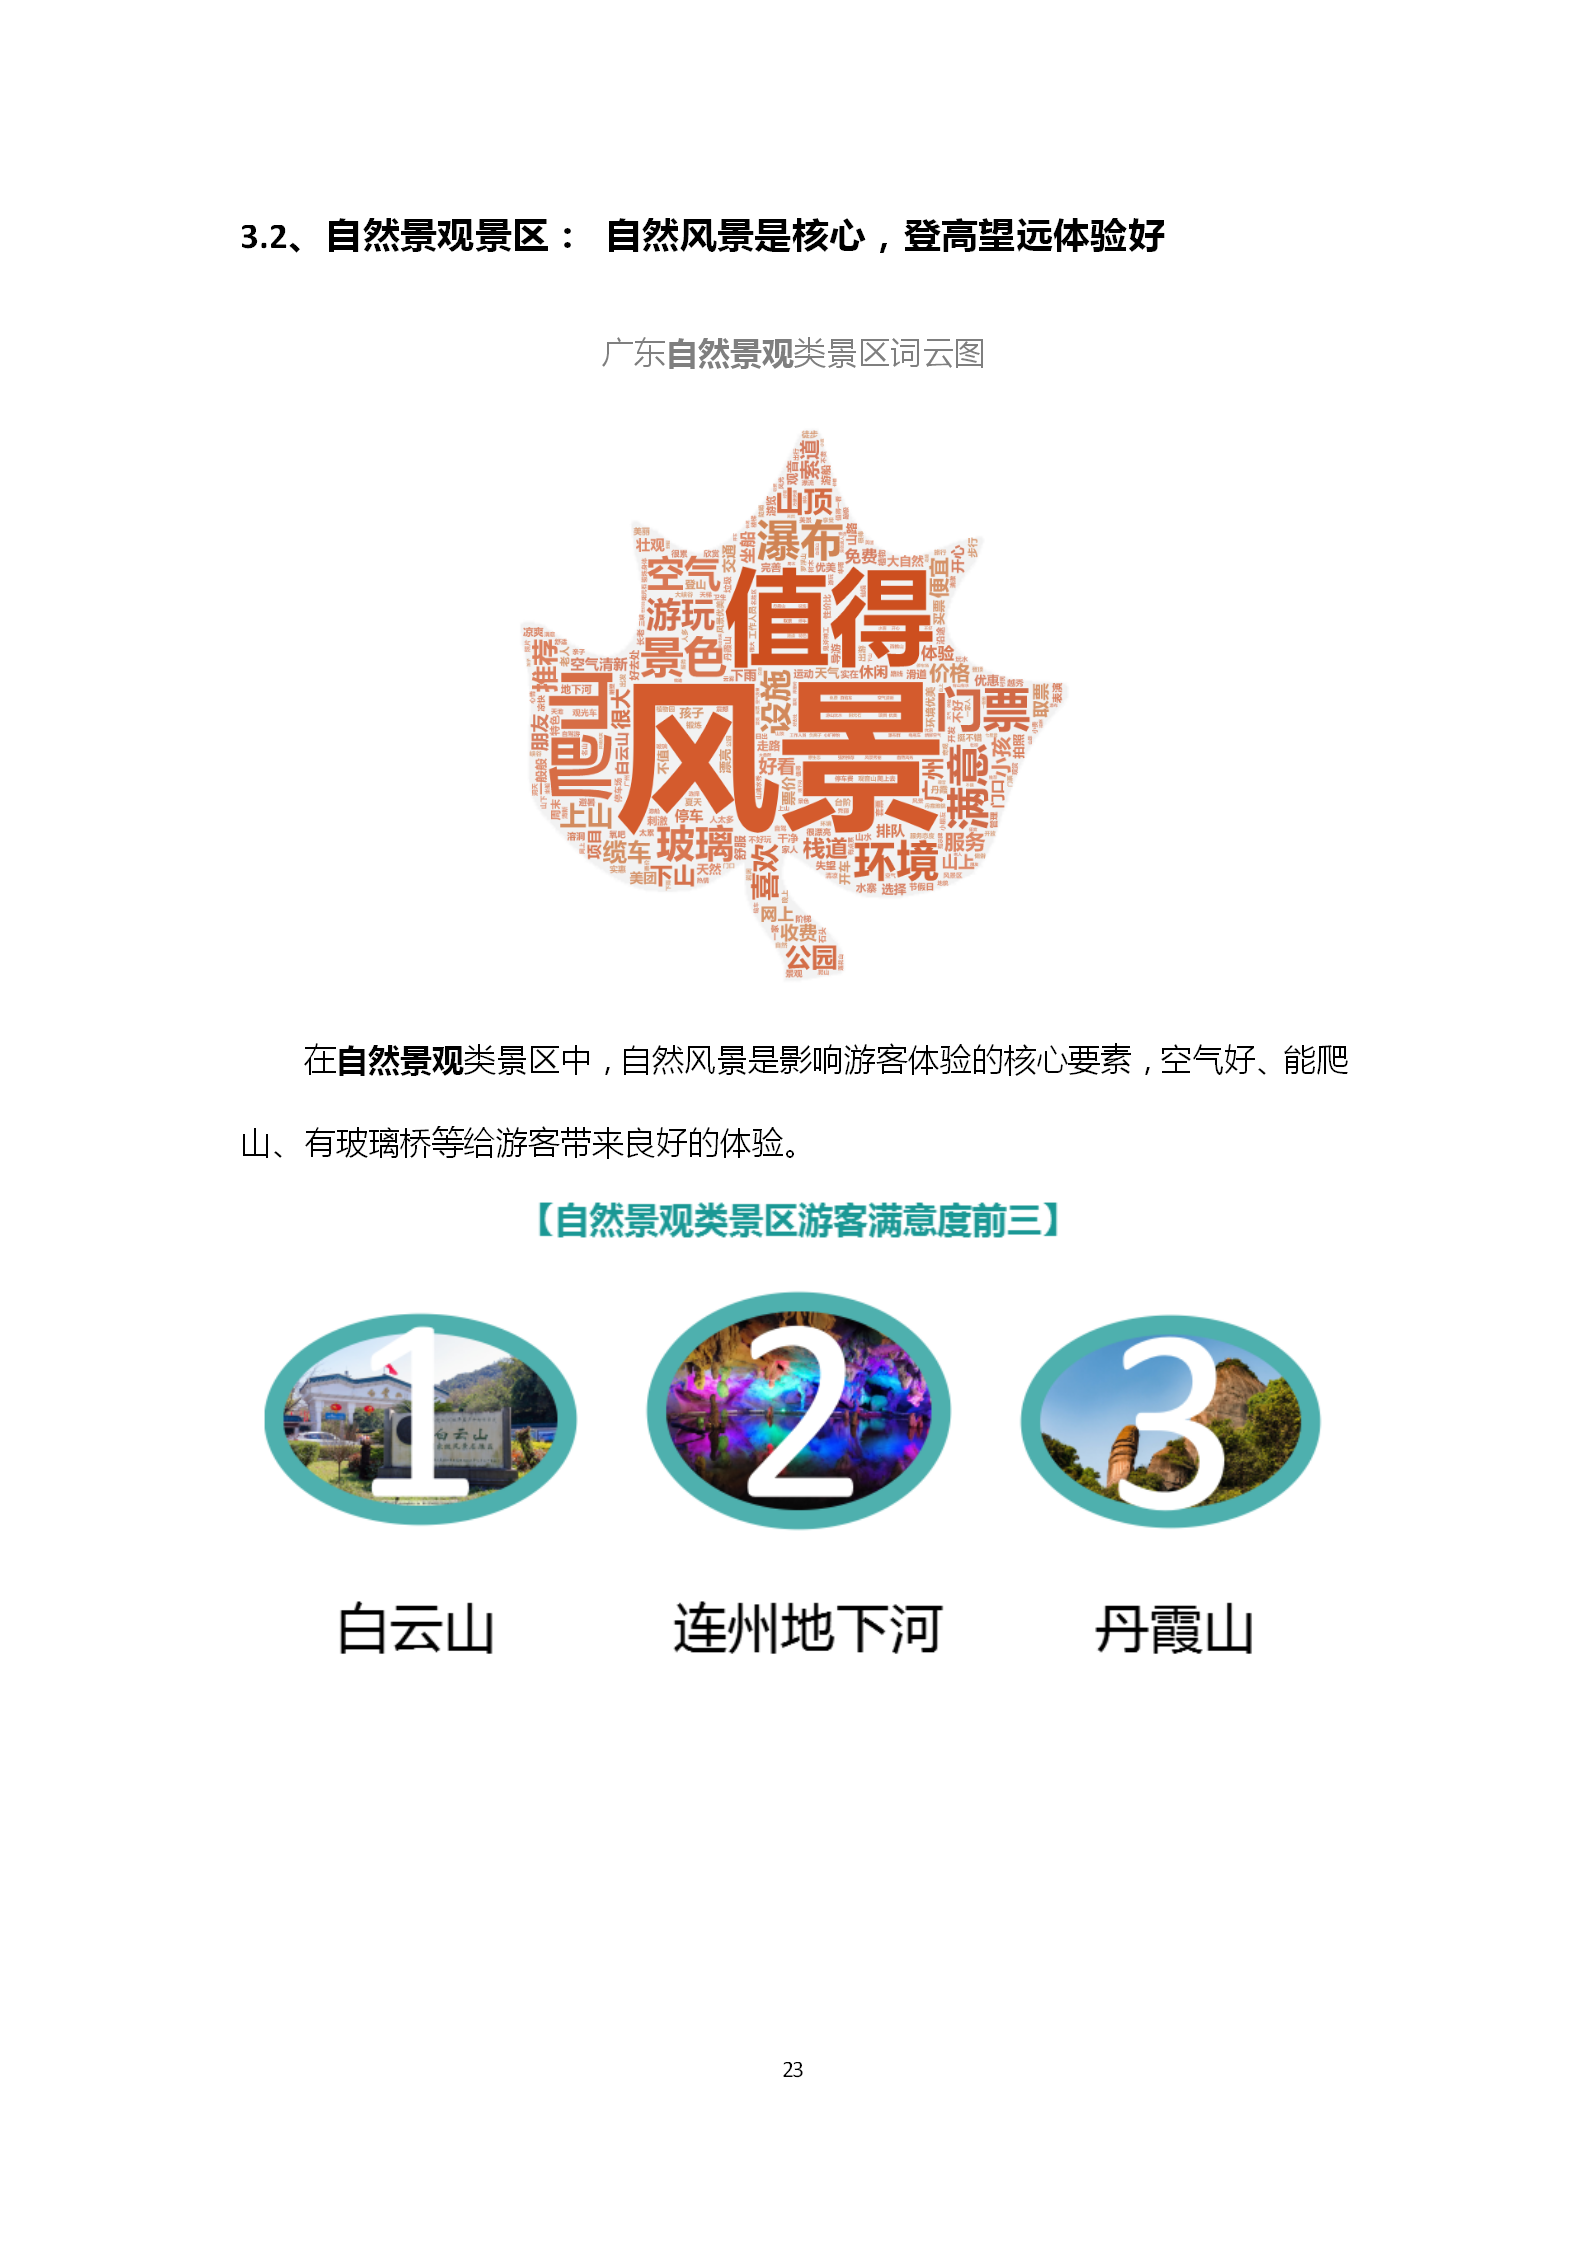 广东省旅游景区游客满意度大数据调查报告-2018年第三季度20181106_24